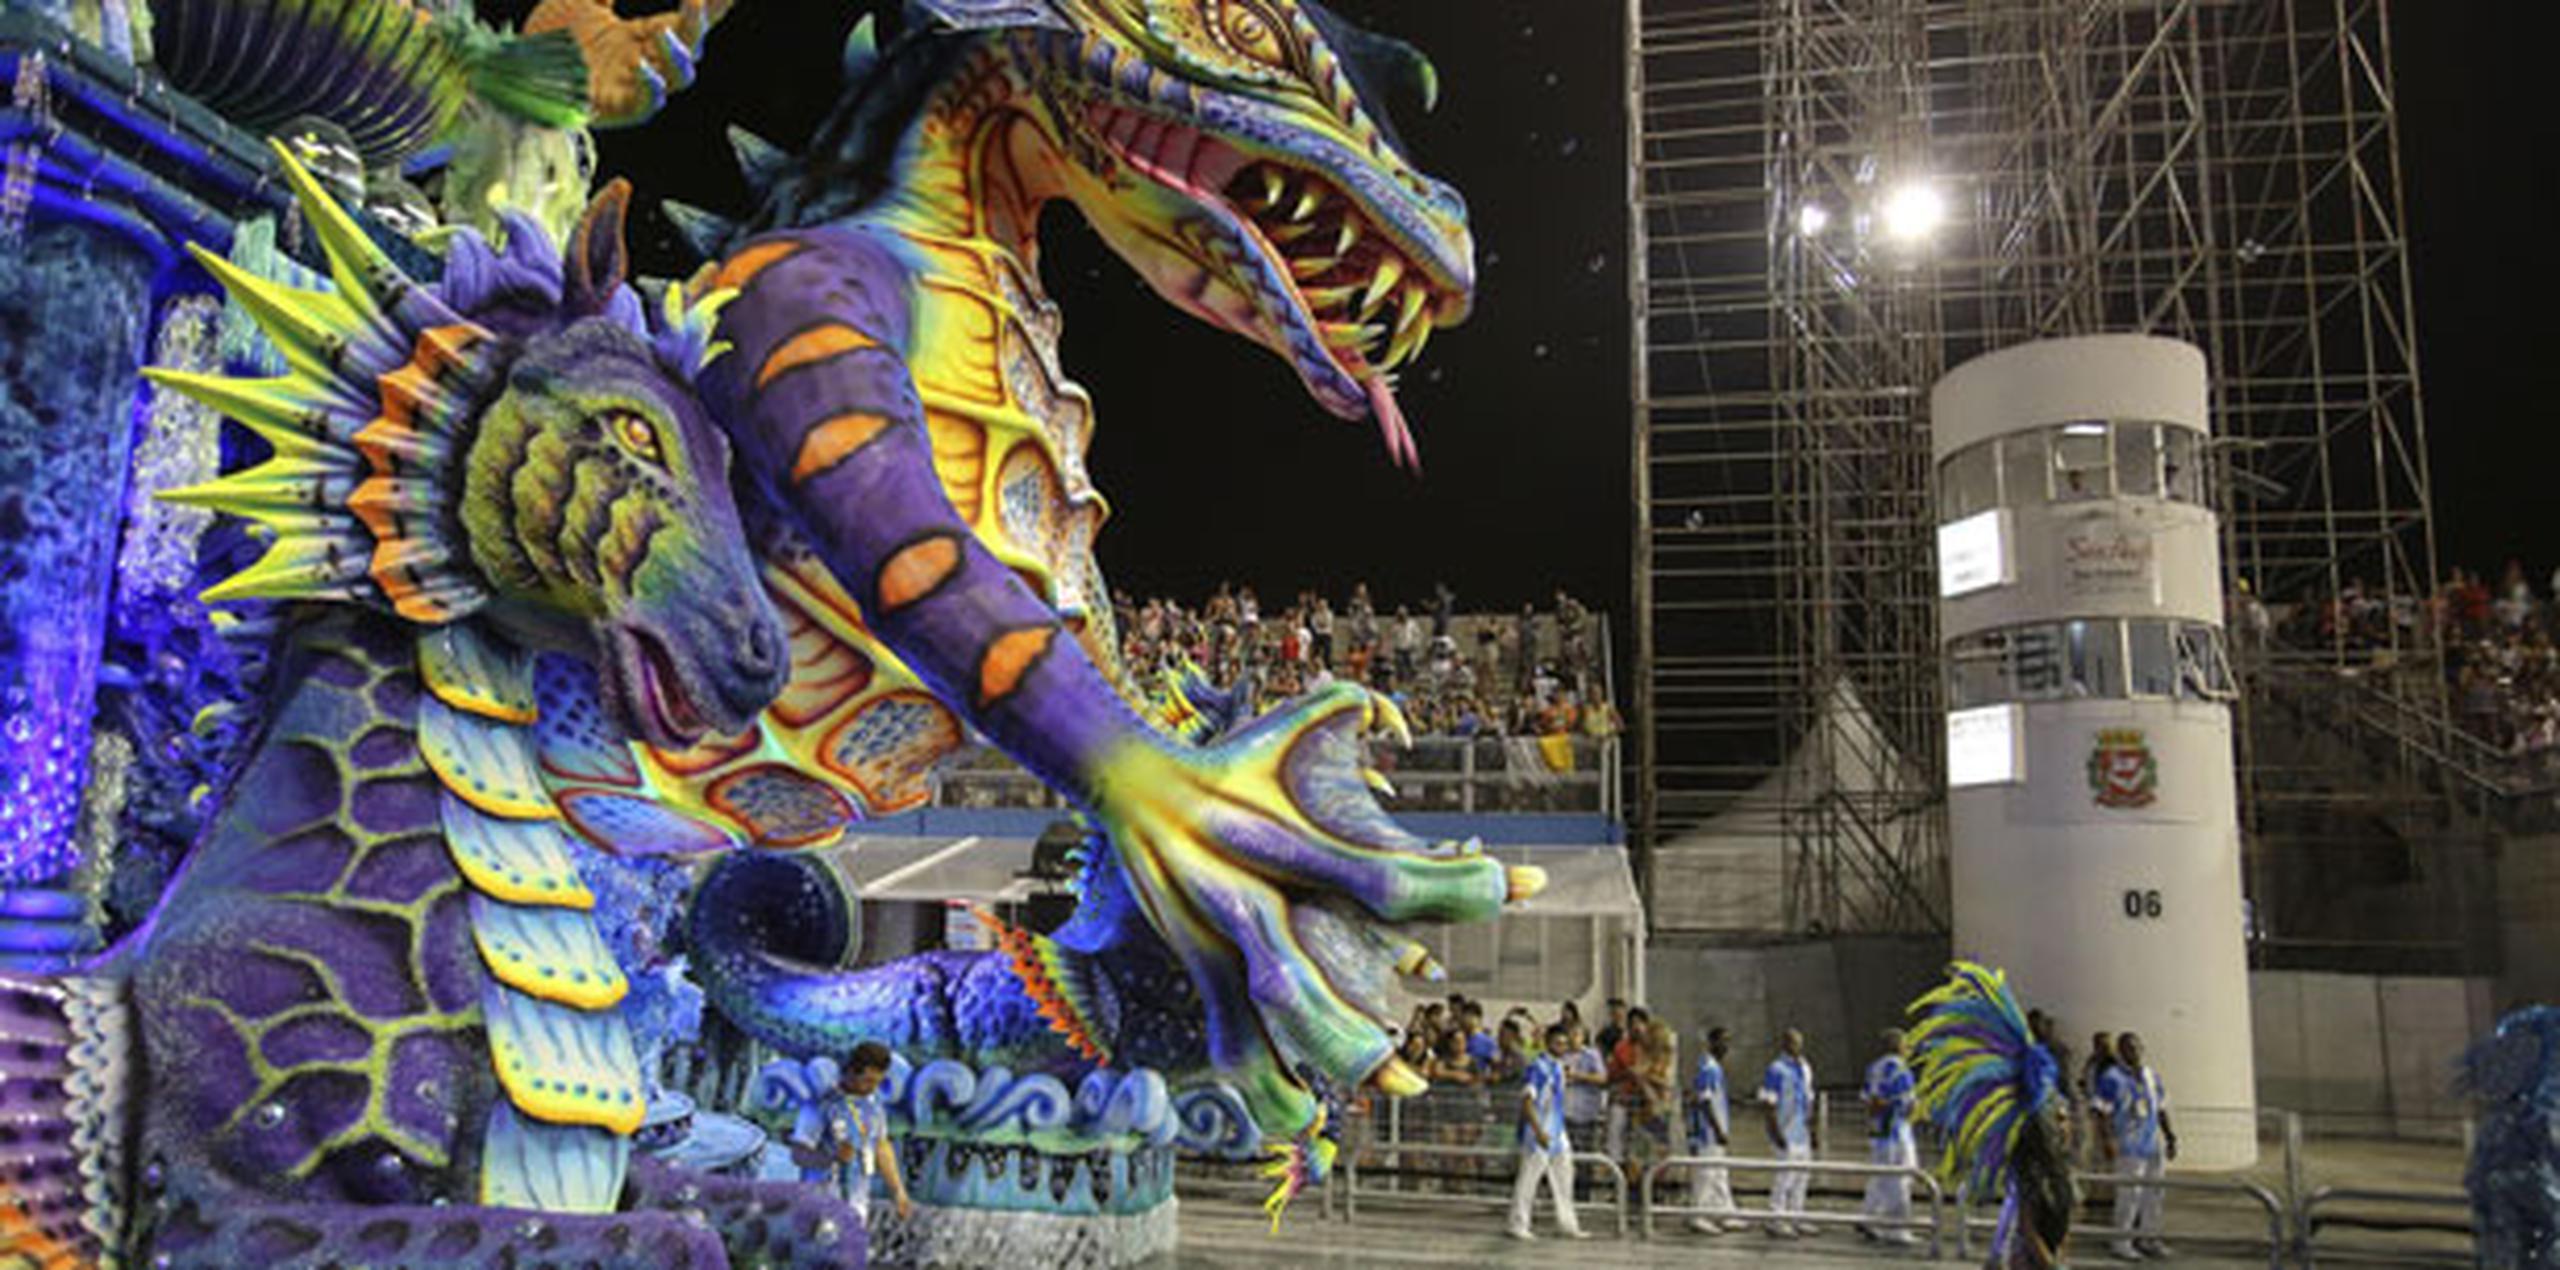 Los menores estaban trabajando como vendedores ambulantes en las zonas de conciertos de Salvador, ciudad que tiene las segundas fiestas de carnaval más concurridas de Brasil después de Río de Janeiro. (EFE)